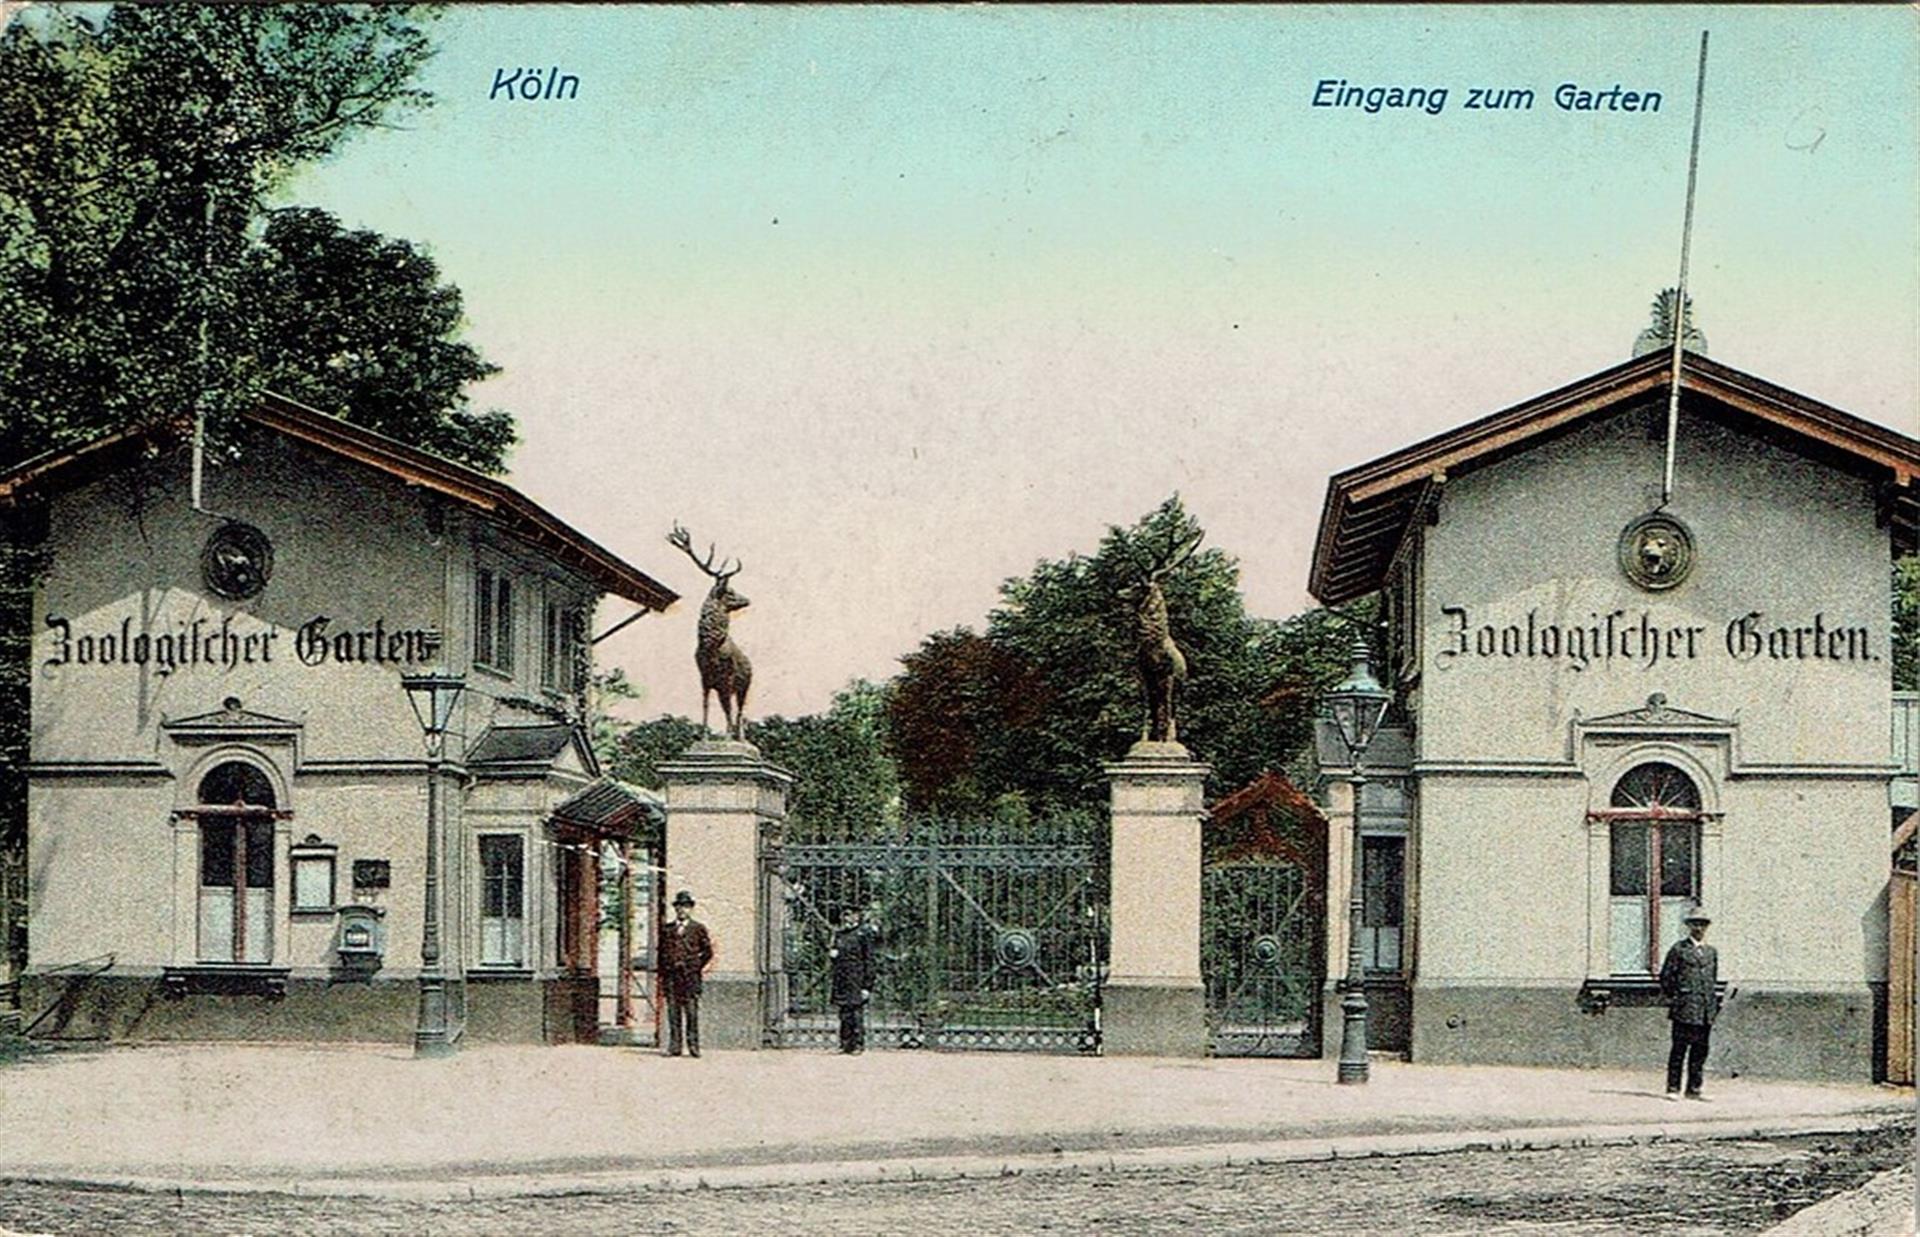 Historische Postkarte (um 1912): "Köln, Eingang zum Garten" mit einem Blick auf den Eingang zum Zoologischen Garten mit zwei seinerzeit dort stehenden Hirschfiguren. &copy; Joachim Brokmeier (Sammlung Brokmeier)